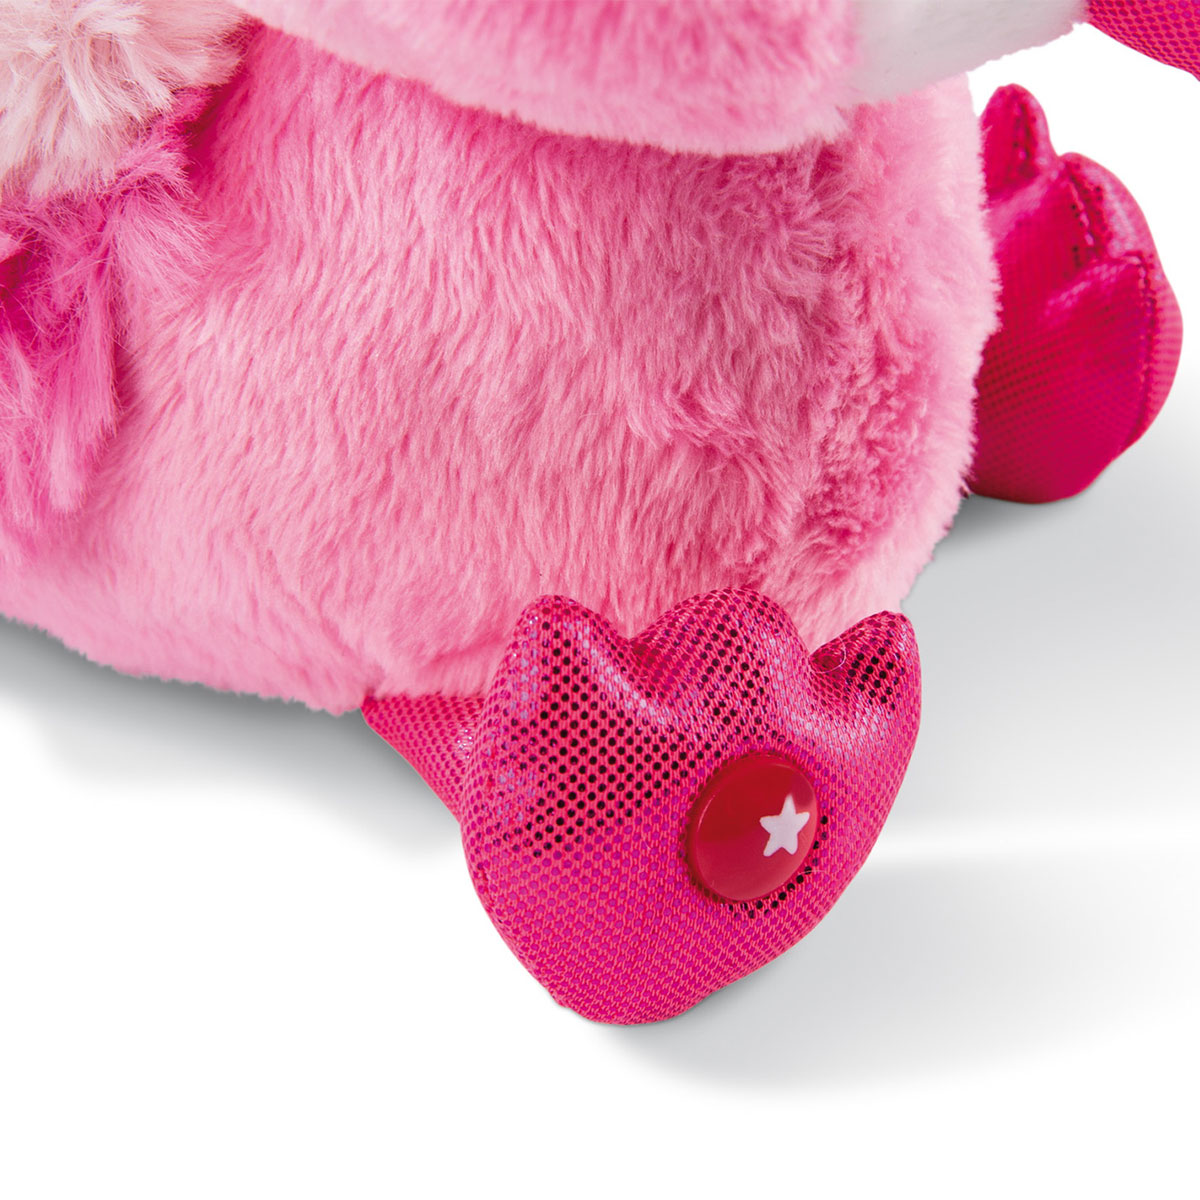 Мягкая игрушка Фламинго Фея-Фей 15 см  